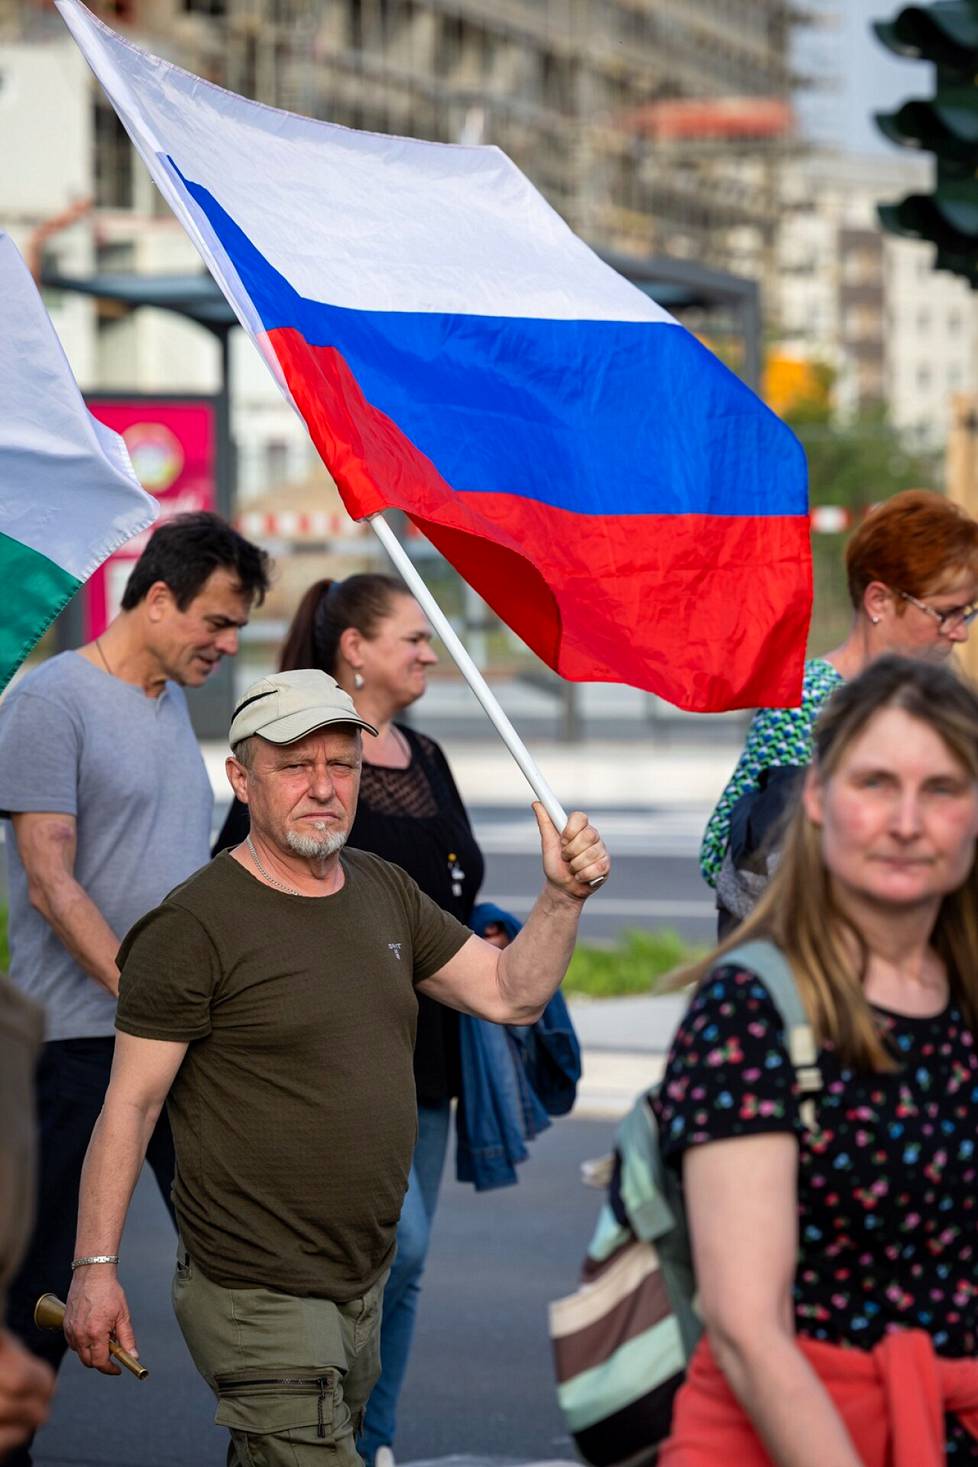 Venäjän liput olivat näkyvästi esillä Saksan äärioikeiston mielenosoituksessa Chemnitzissä.